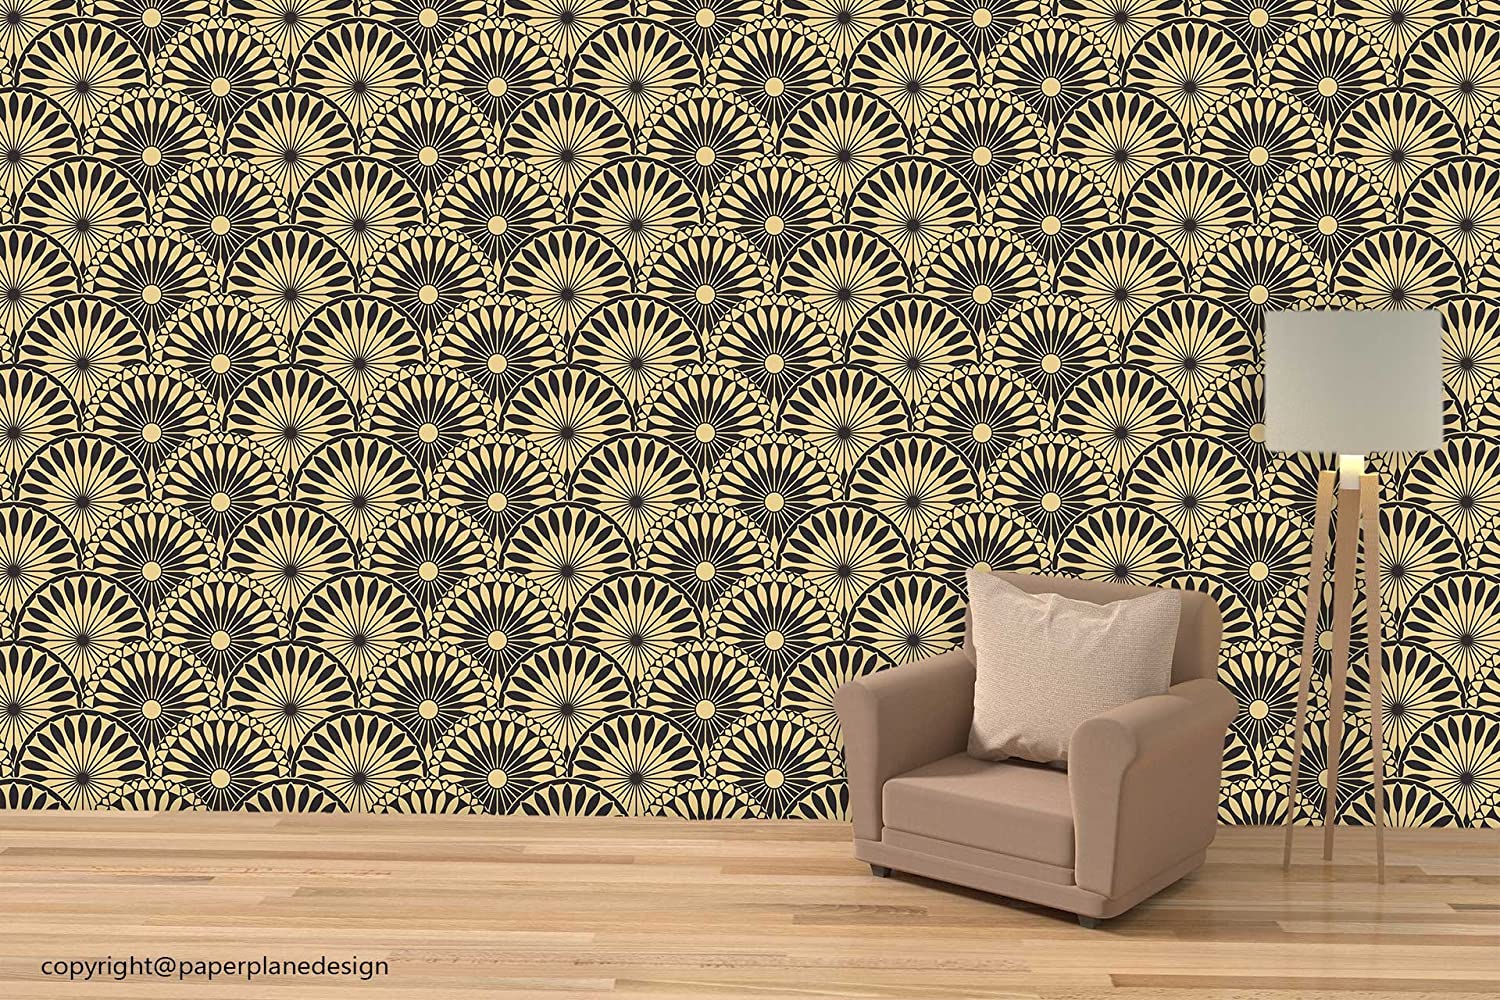 Paper Plane Design Golden Wallpaper For Living Room - Home Wall Wallpaper Design , HD Wallpaper & Backgrounds